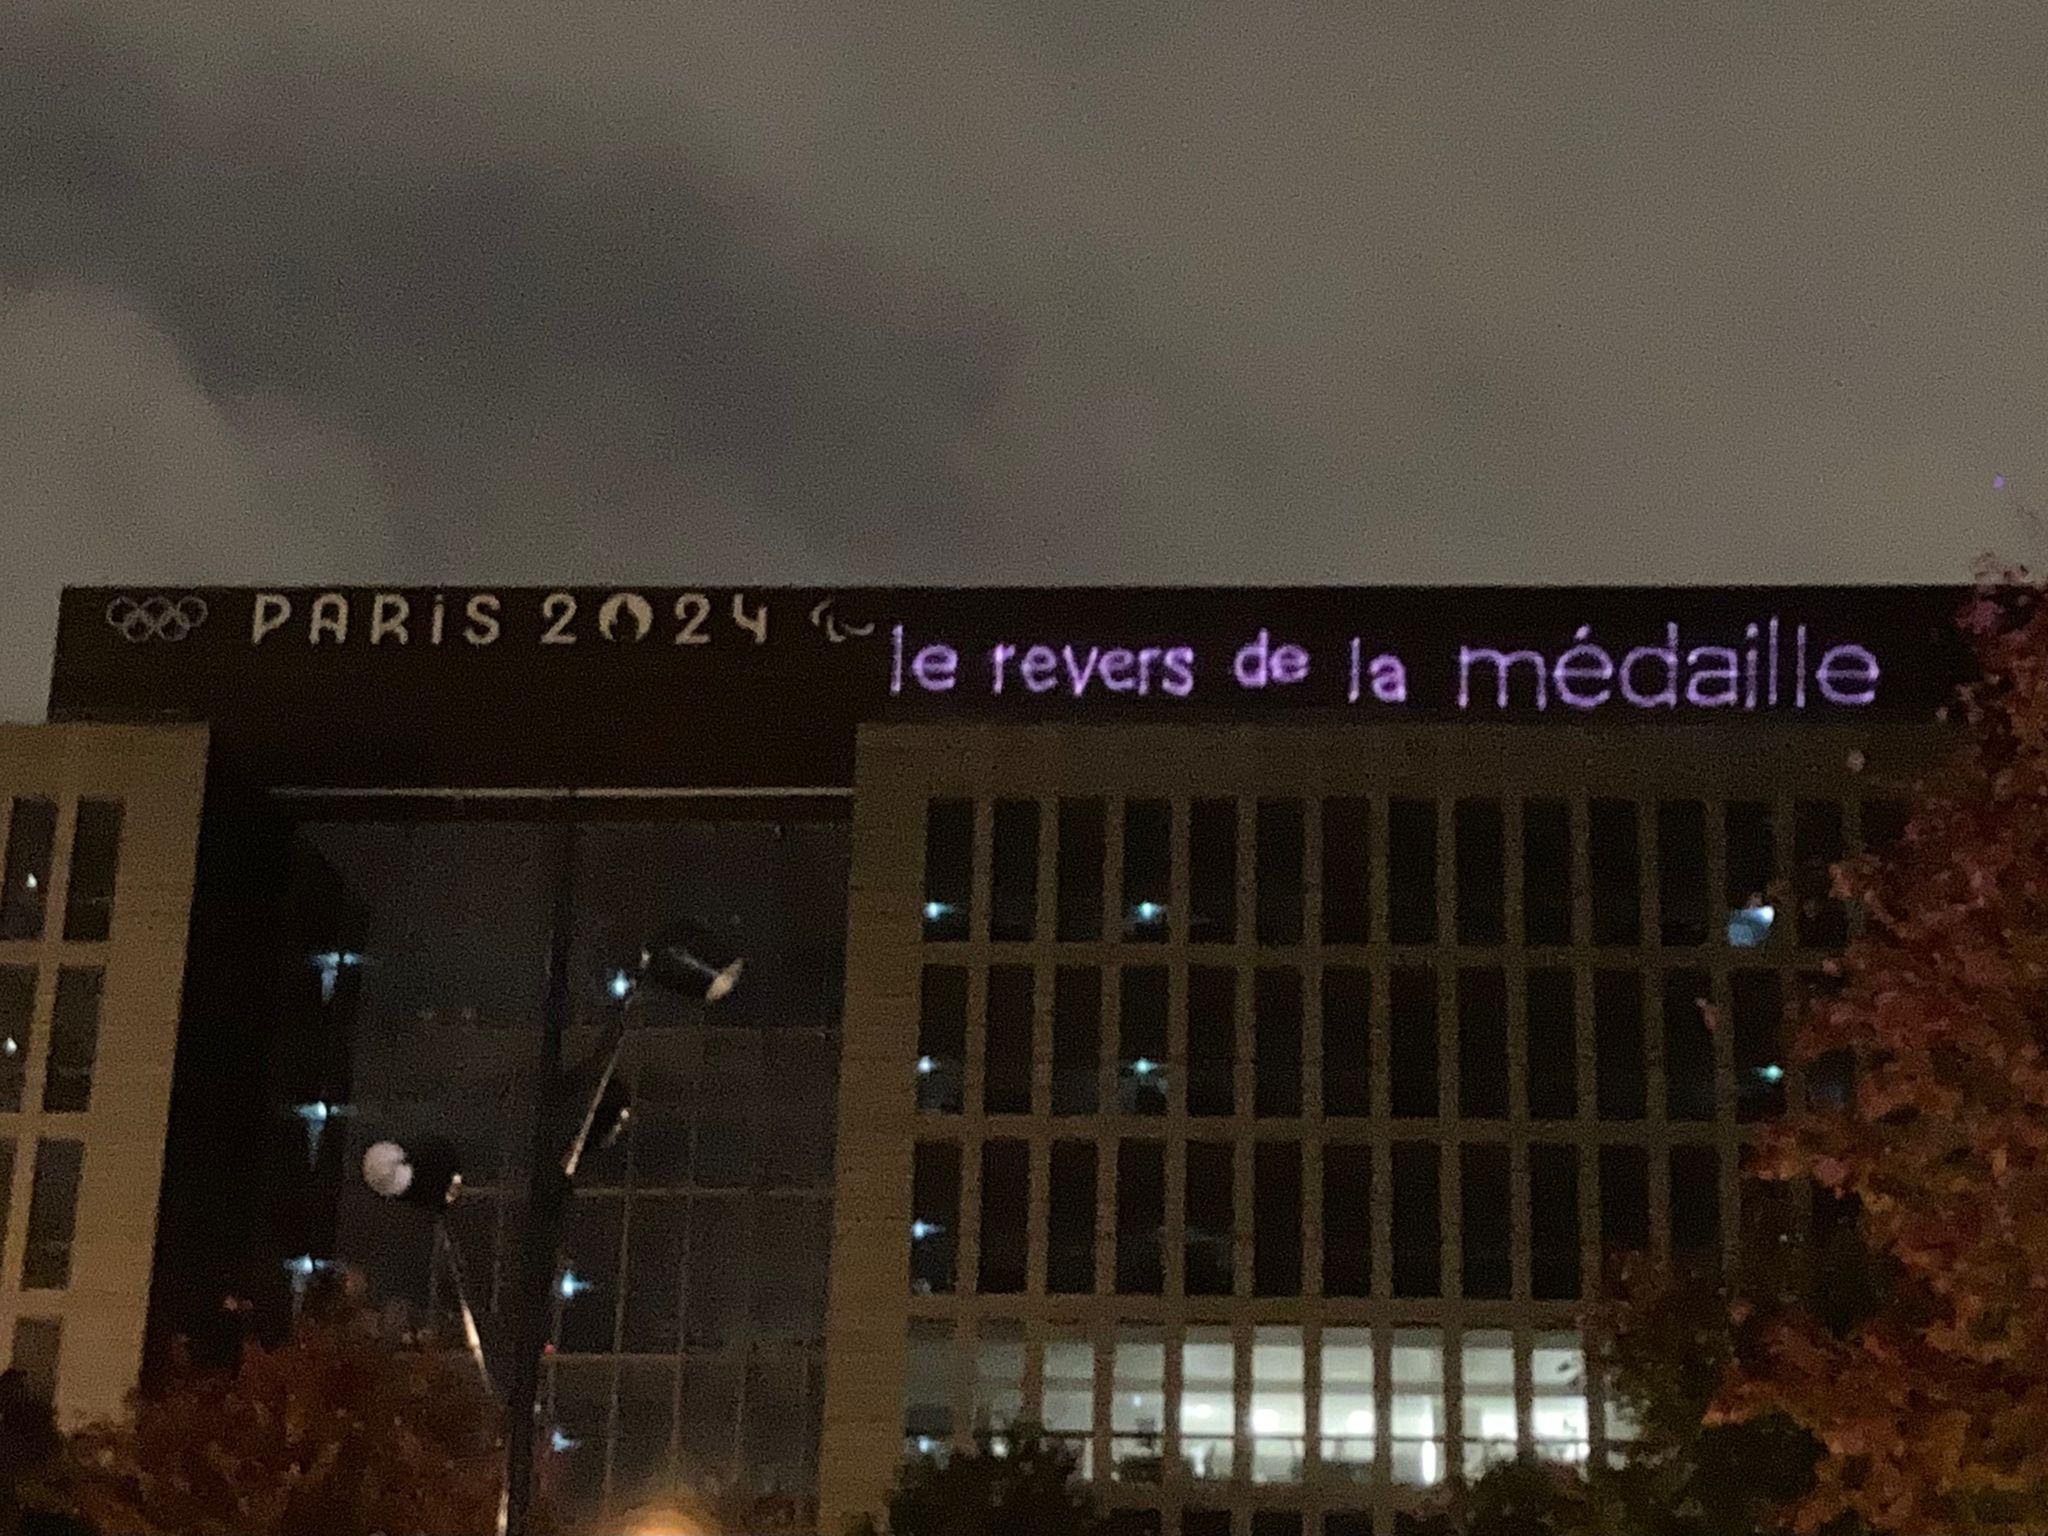 Le message "Le revers de la médaille" projeté par un collectif militant sur le bâtiment du Comité d'organisation des Jeux olympiques fin octobre. [Utopia 56]